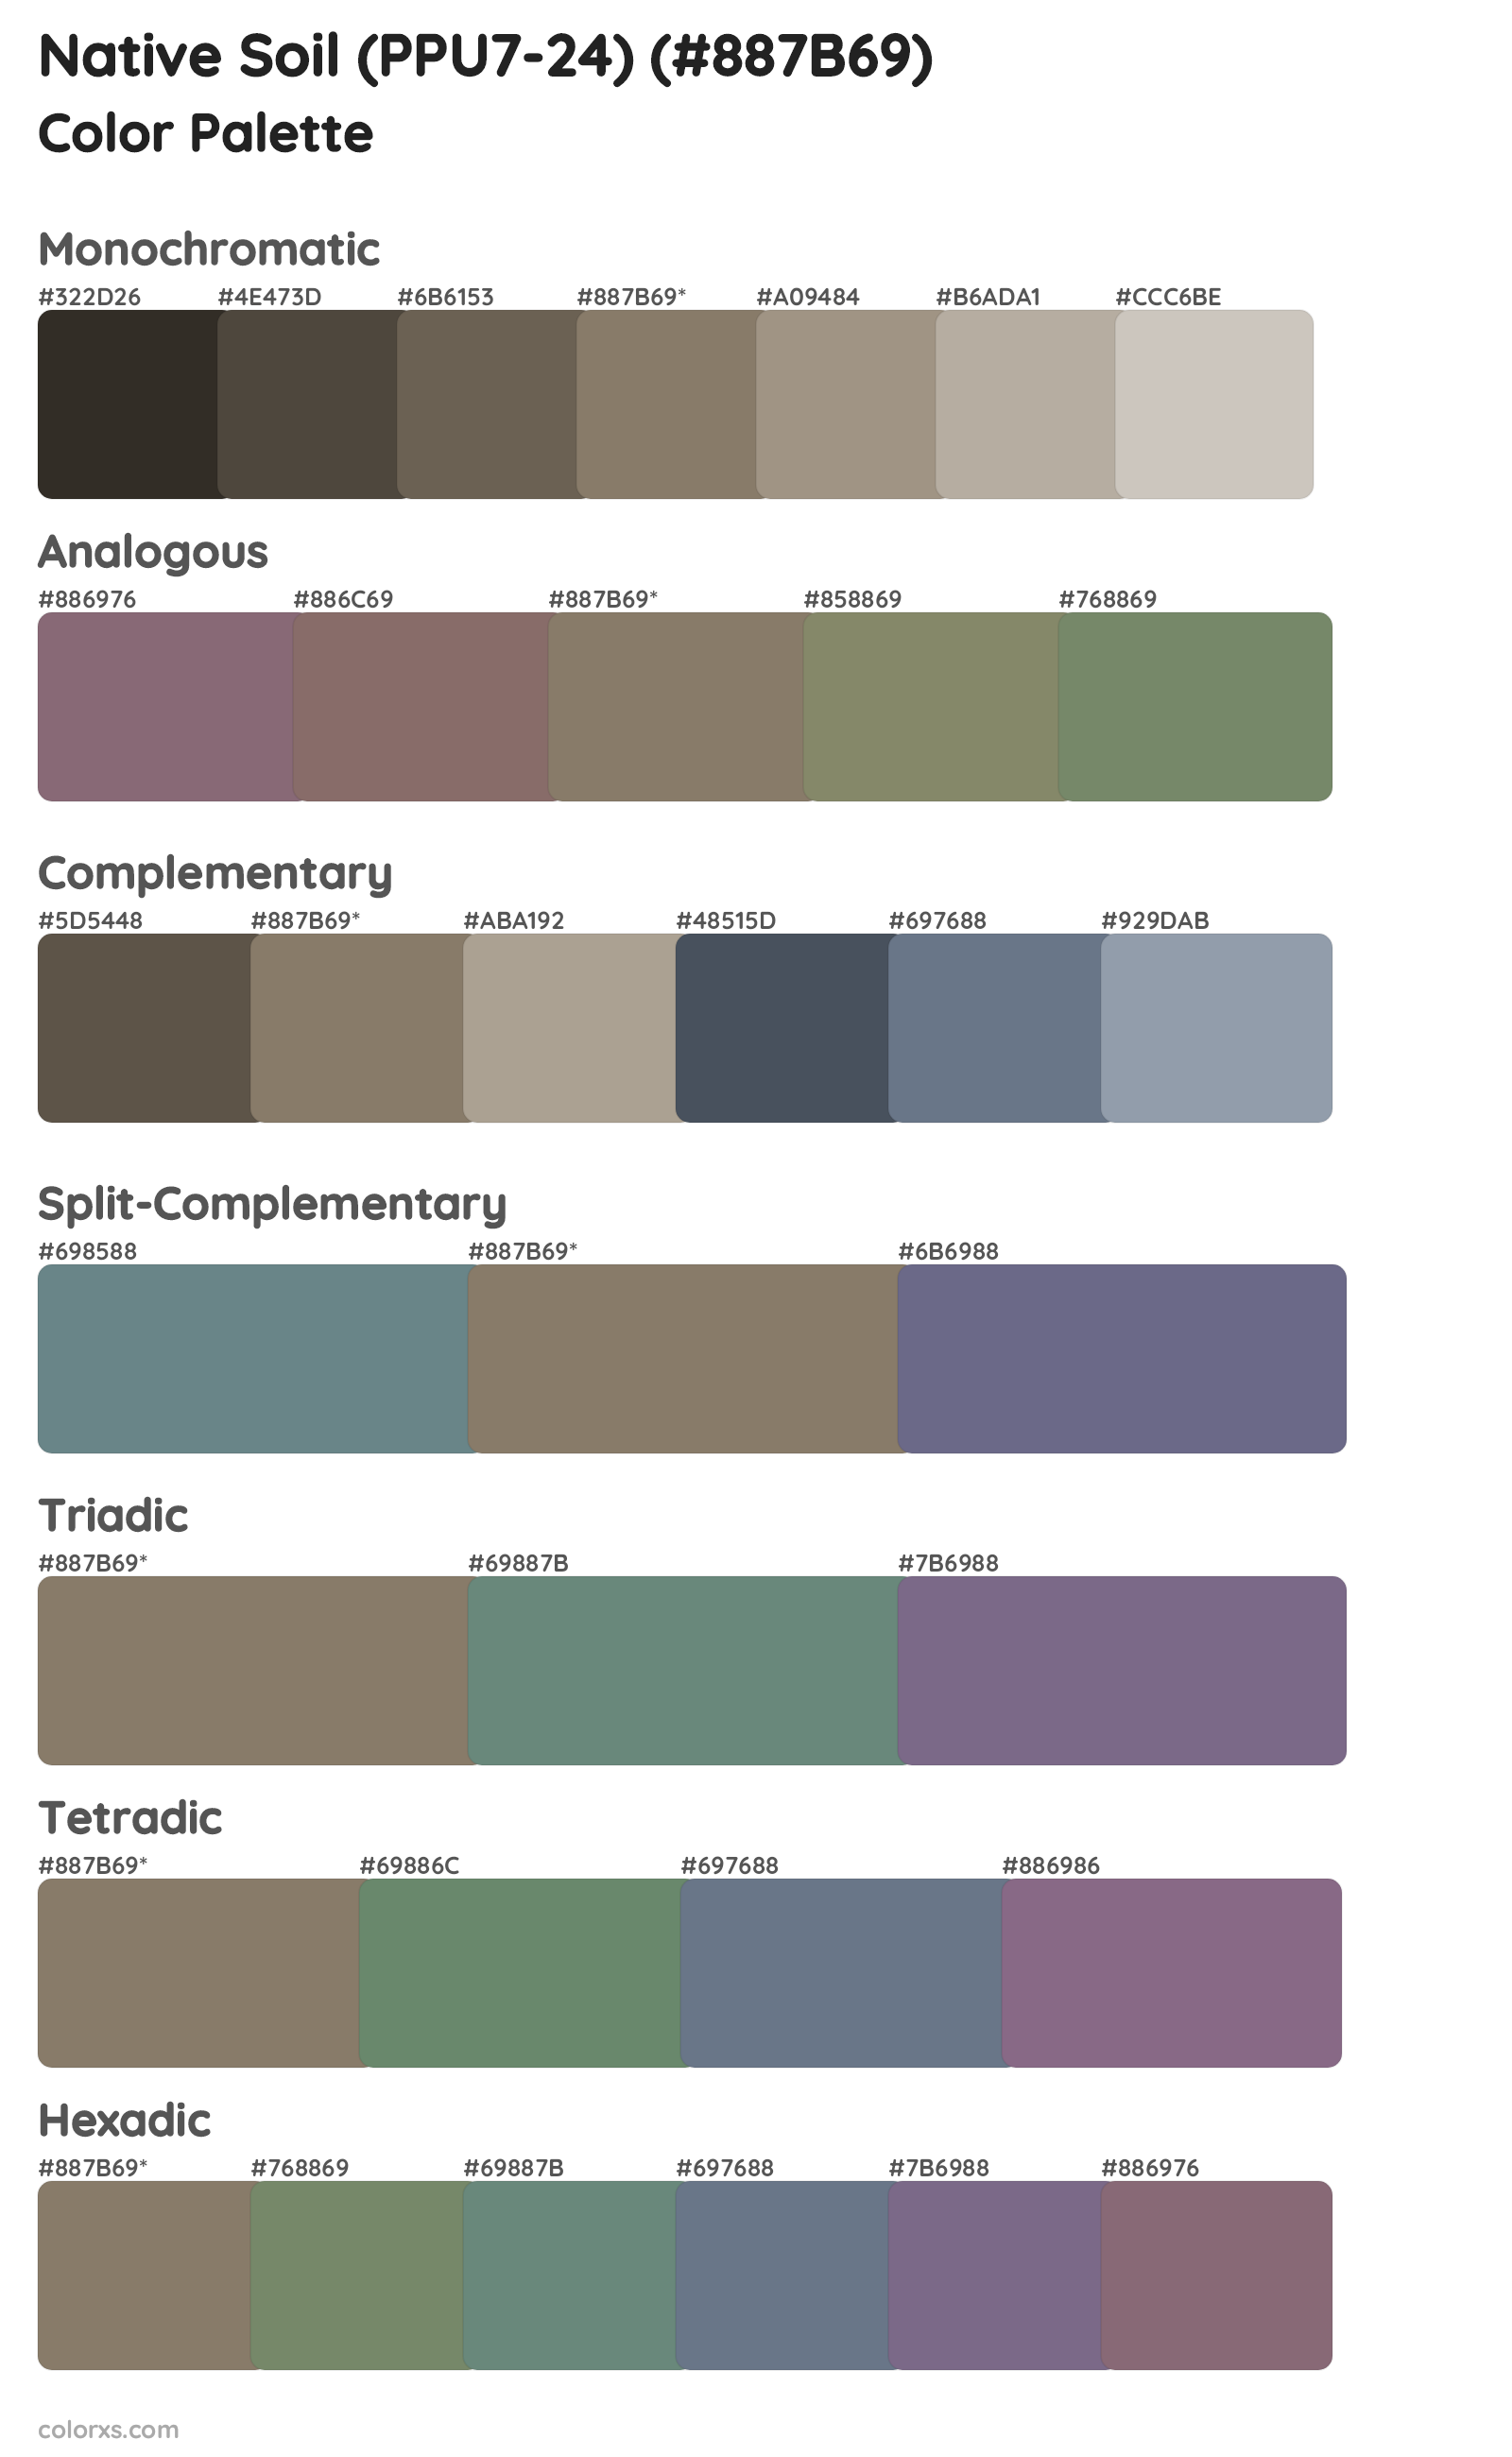 Native Soil (PPU7-24) Color Scheme Palettes